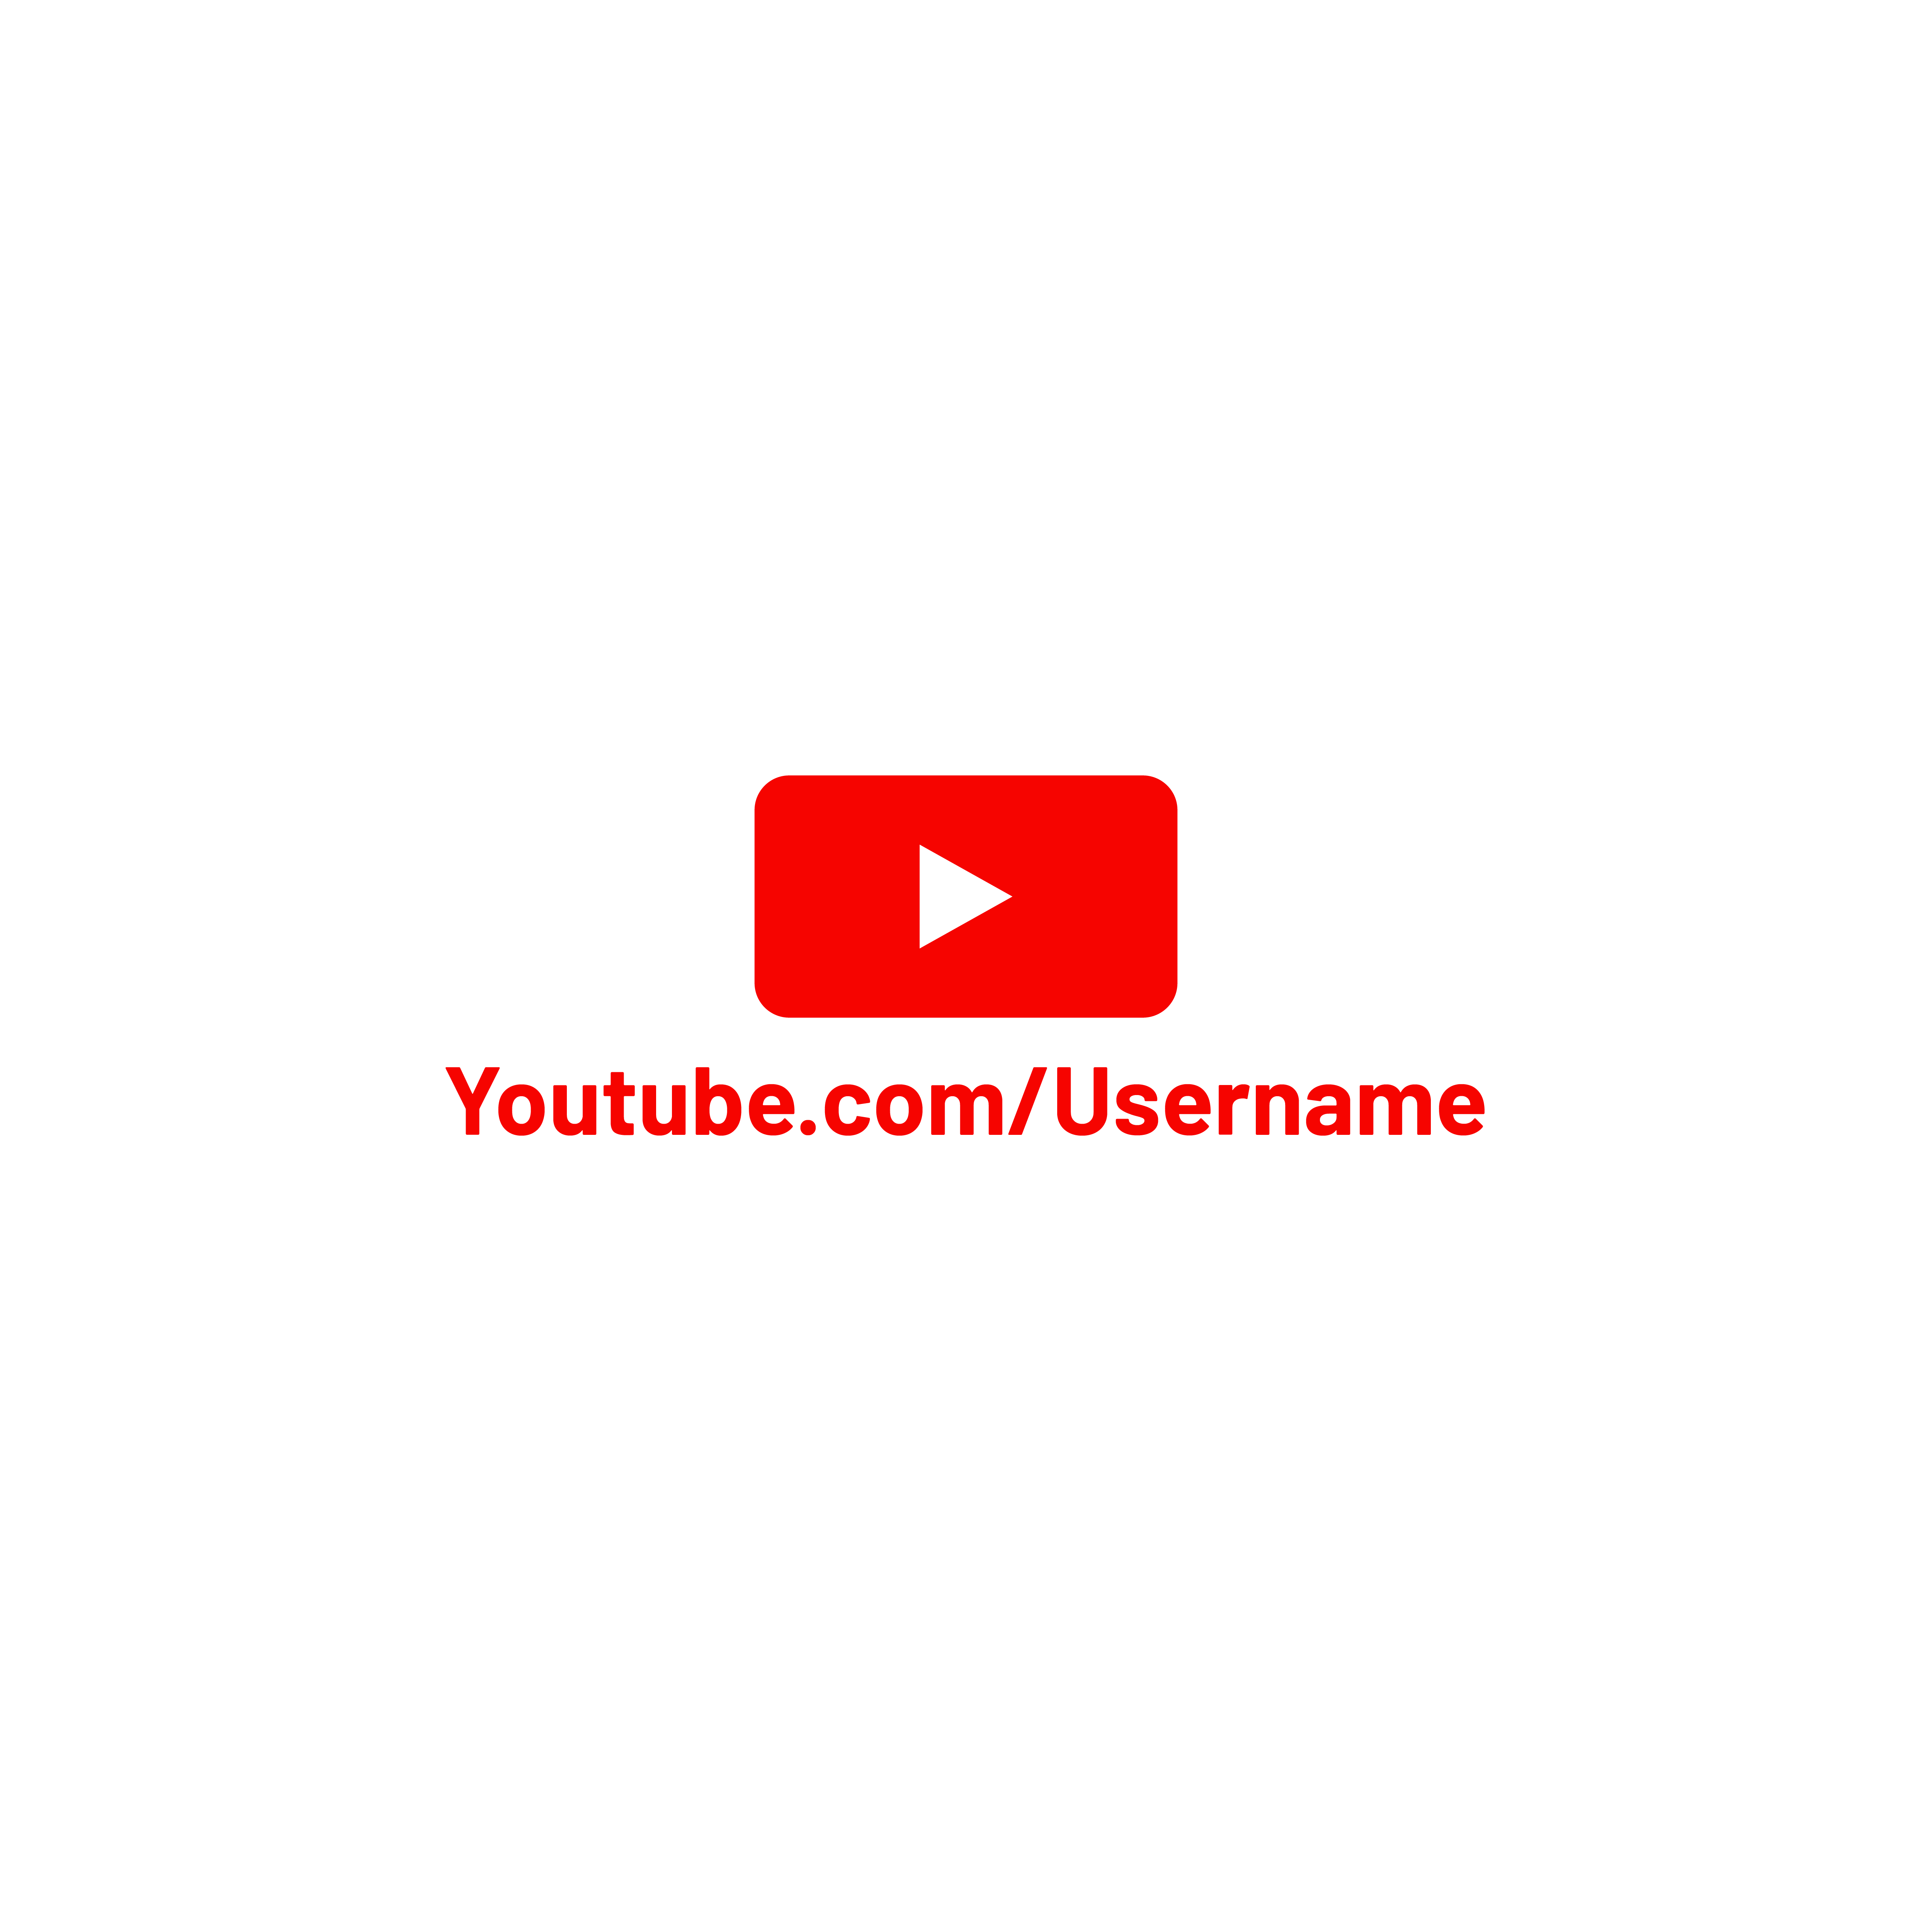 youtube logo with username